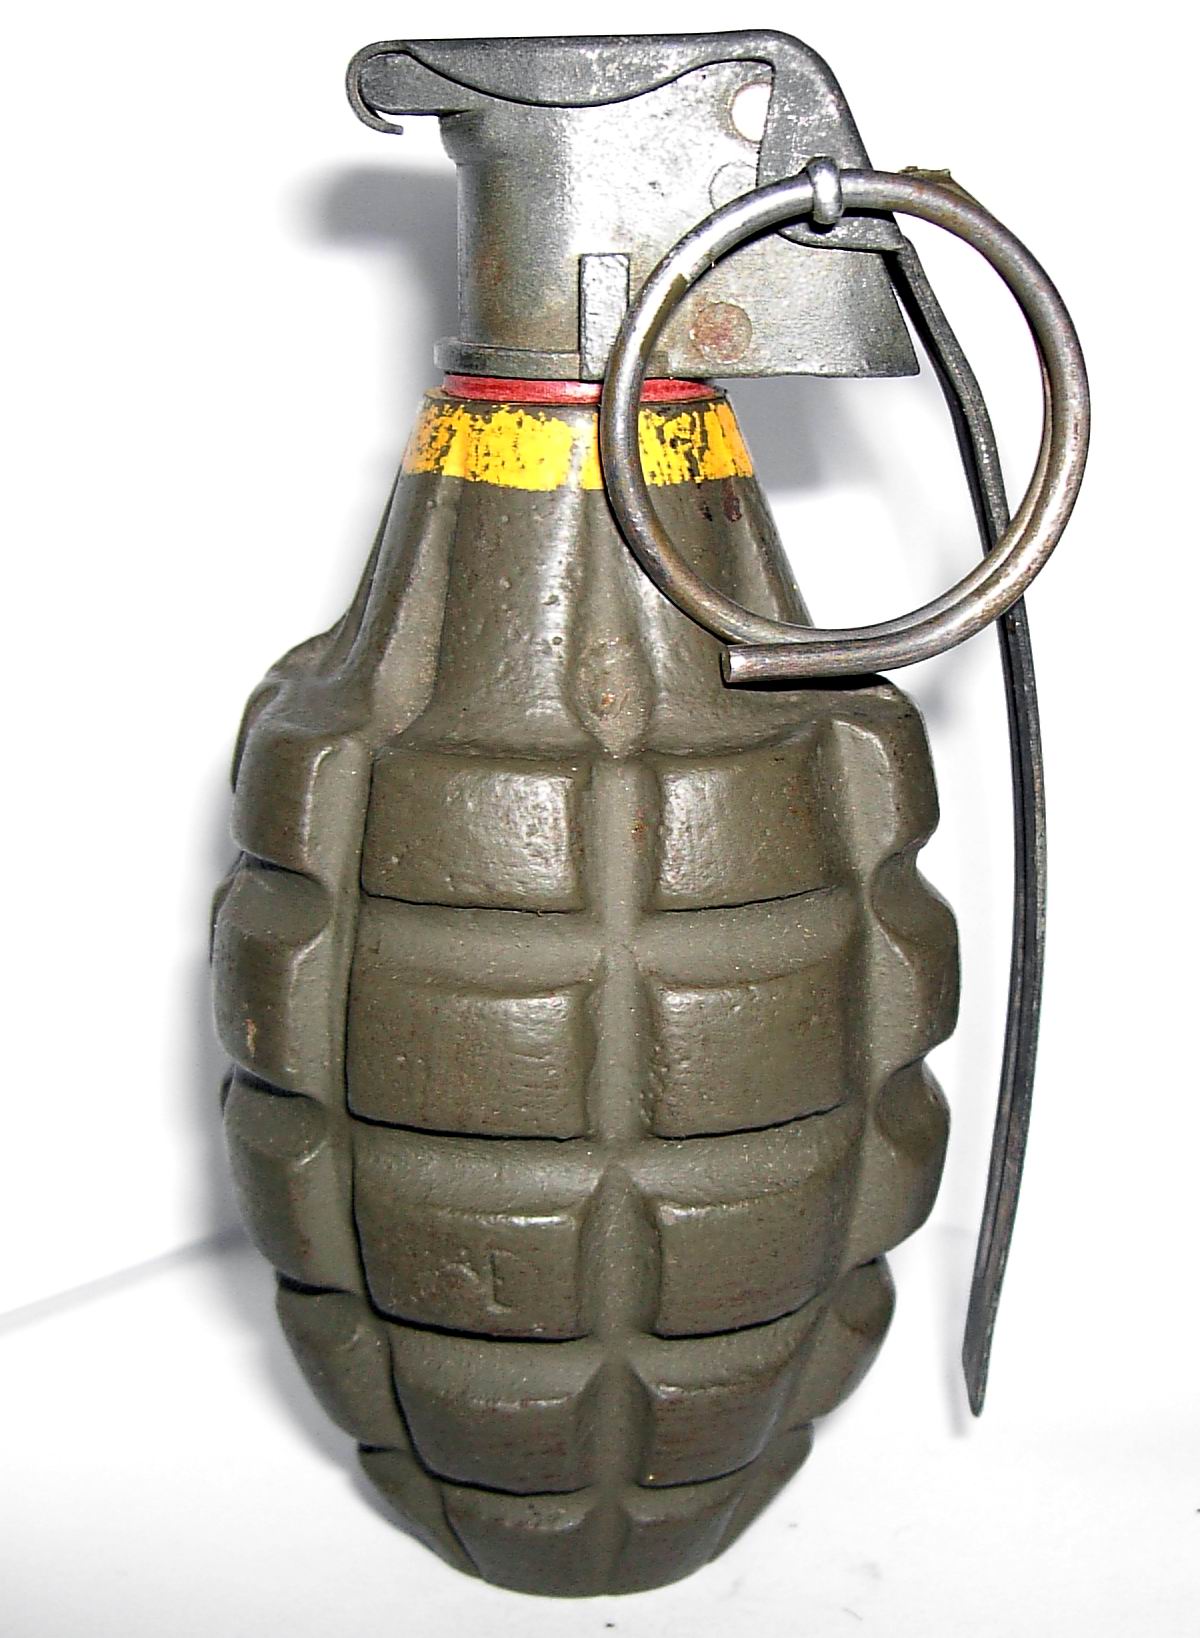 Grenade #2